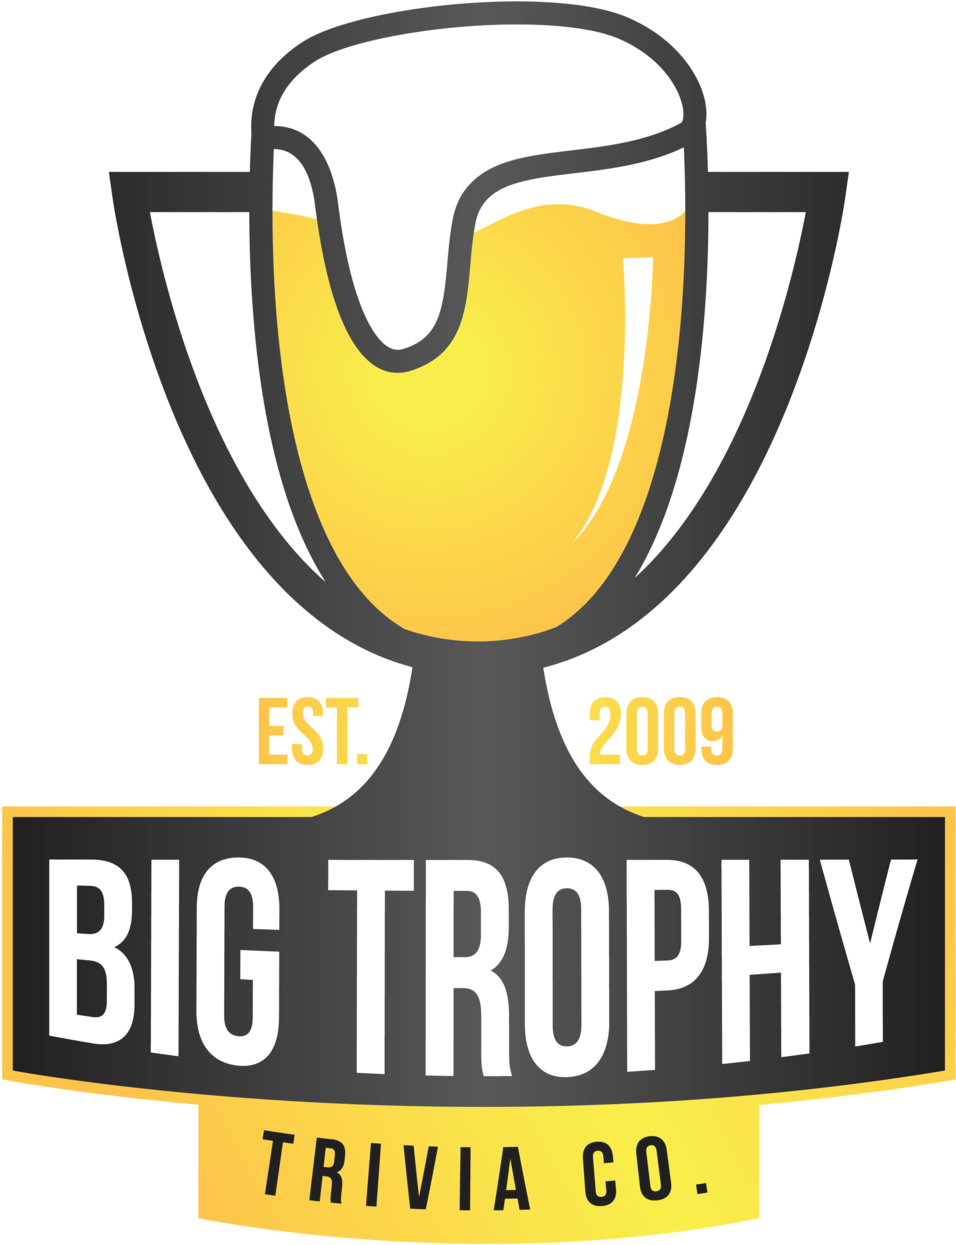 Big Trophy Trivia , Png Download Clipart (956x1245), Png Download